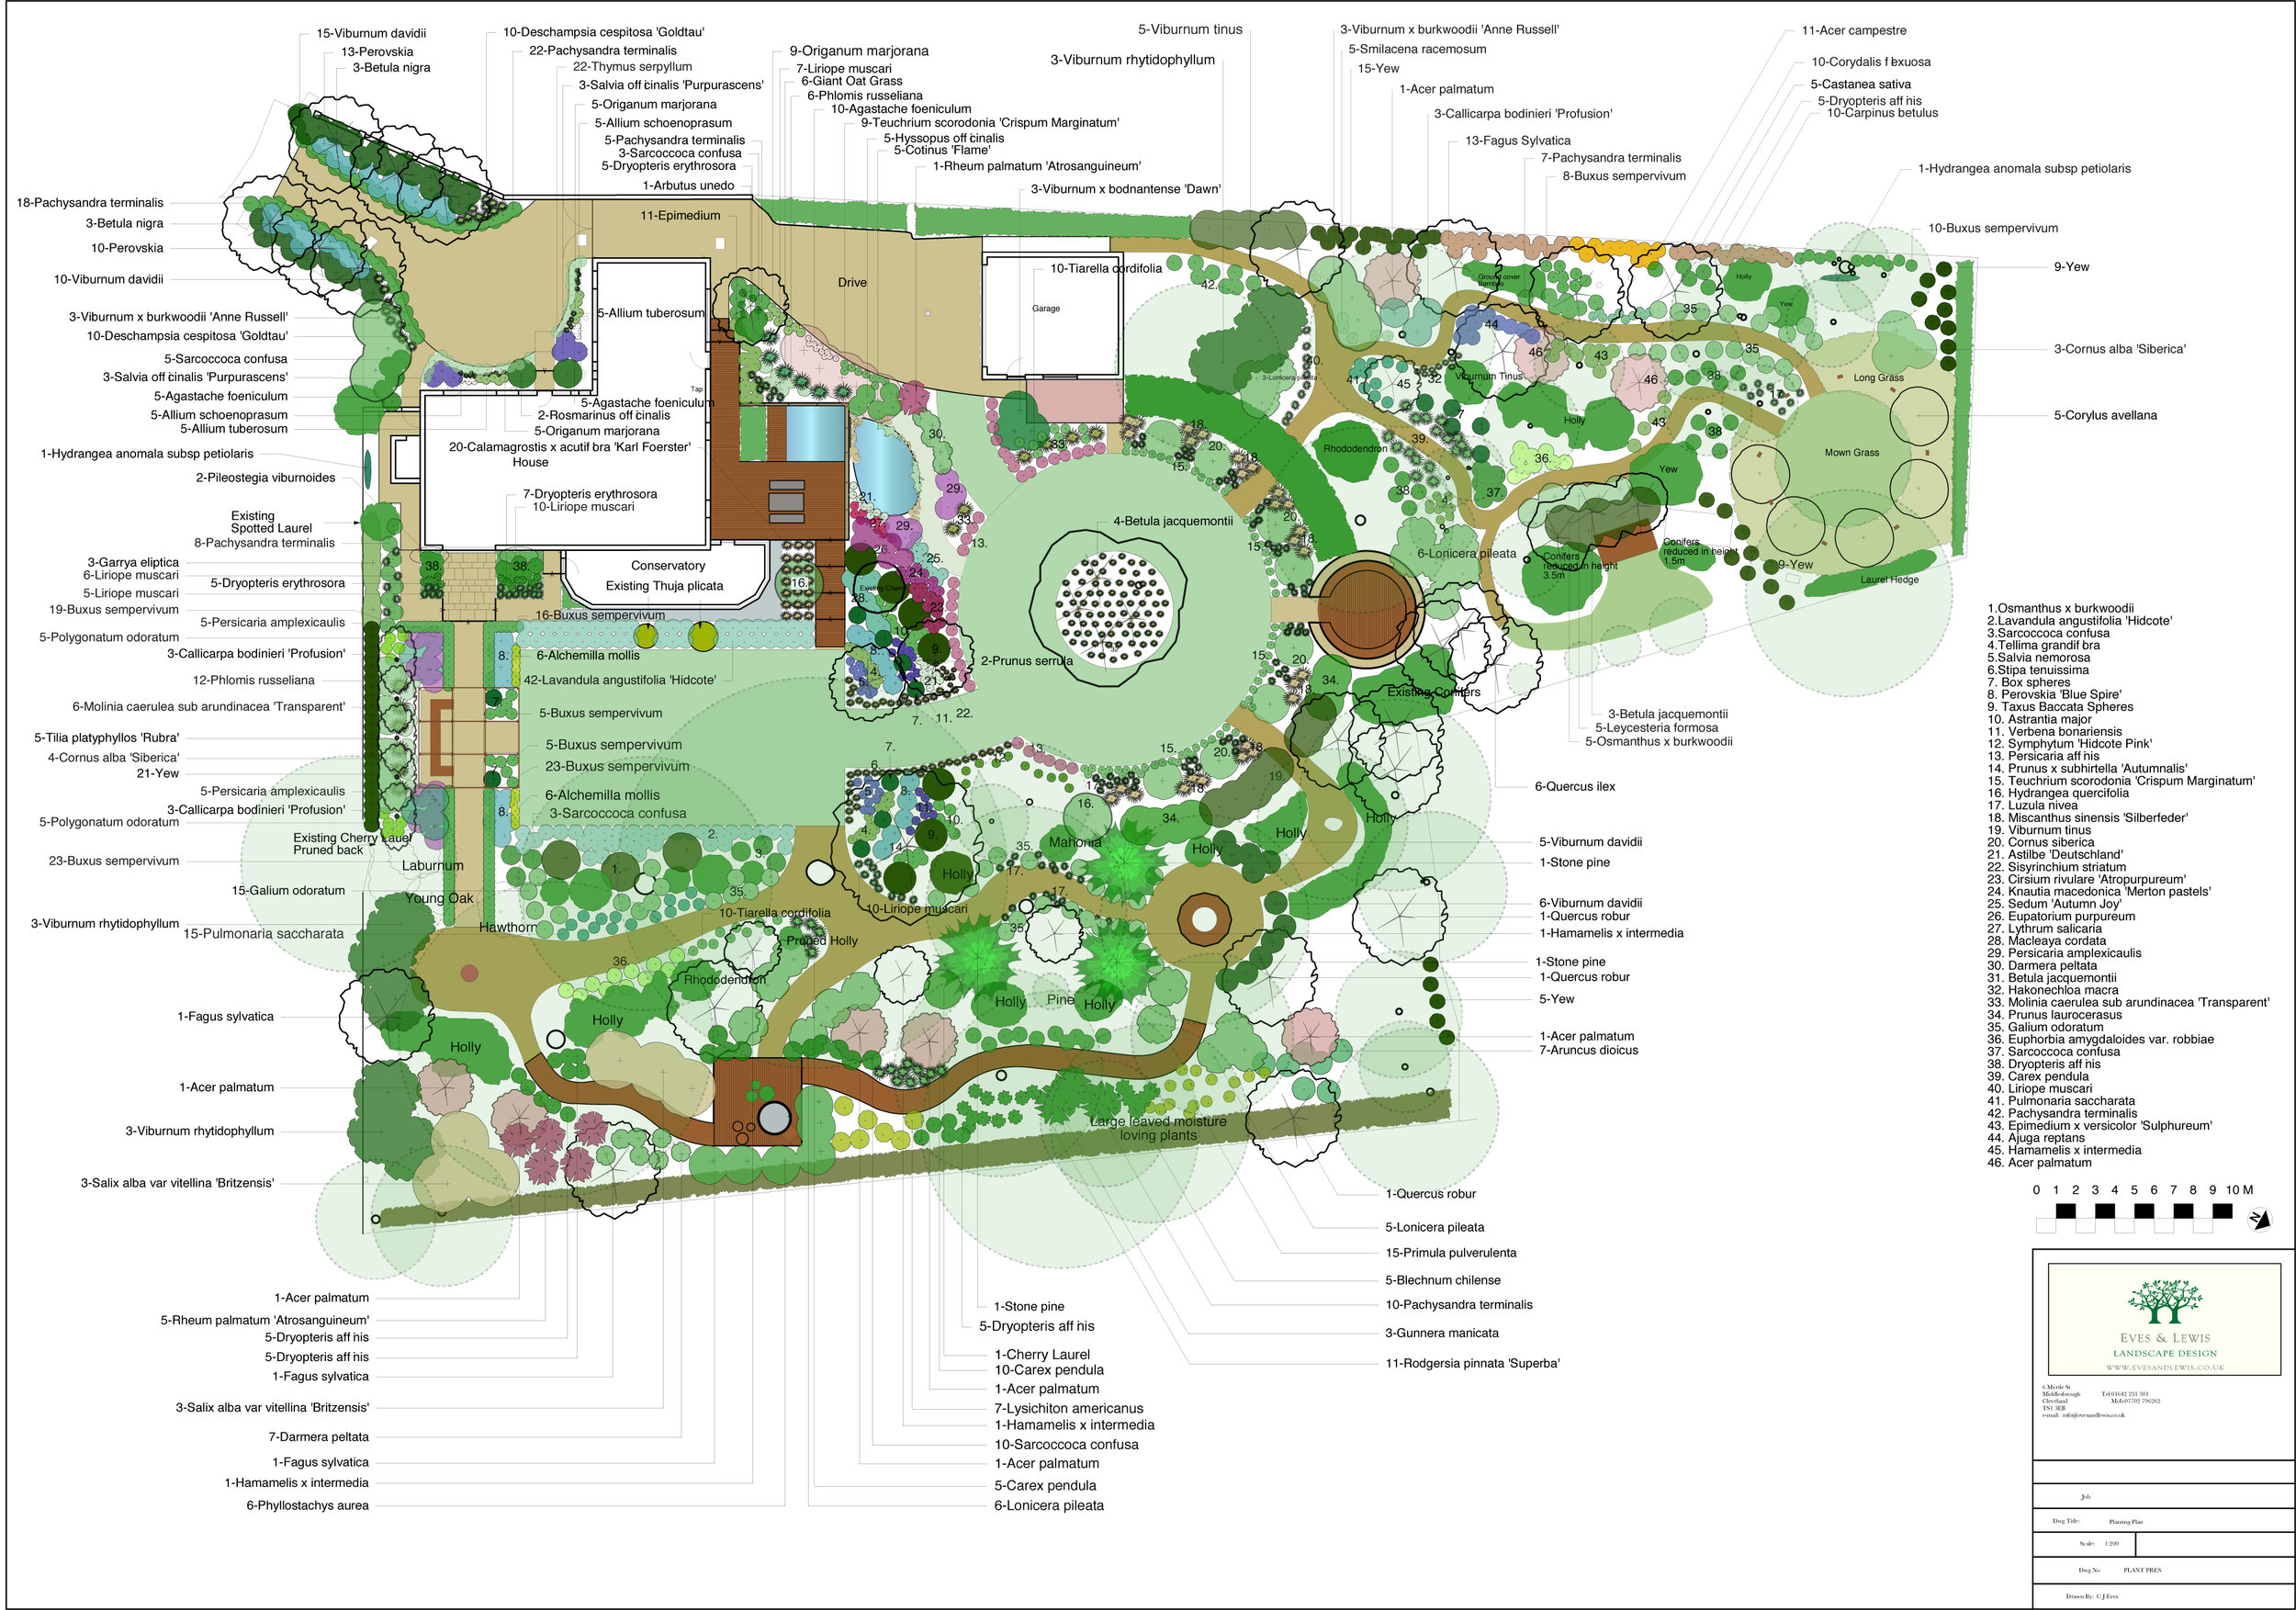 Planting Plan by Eves & Lewis Landscape Design